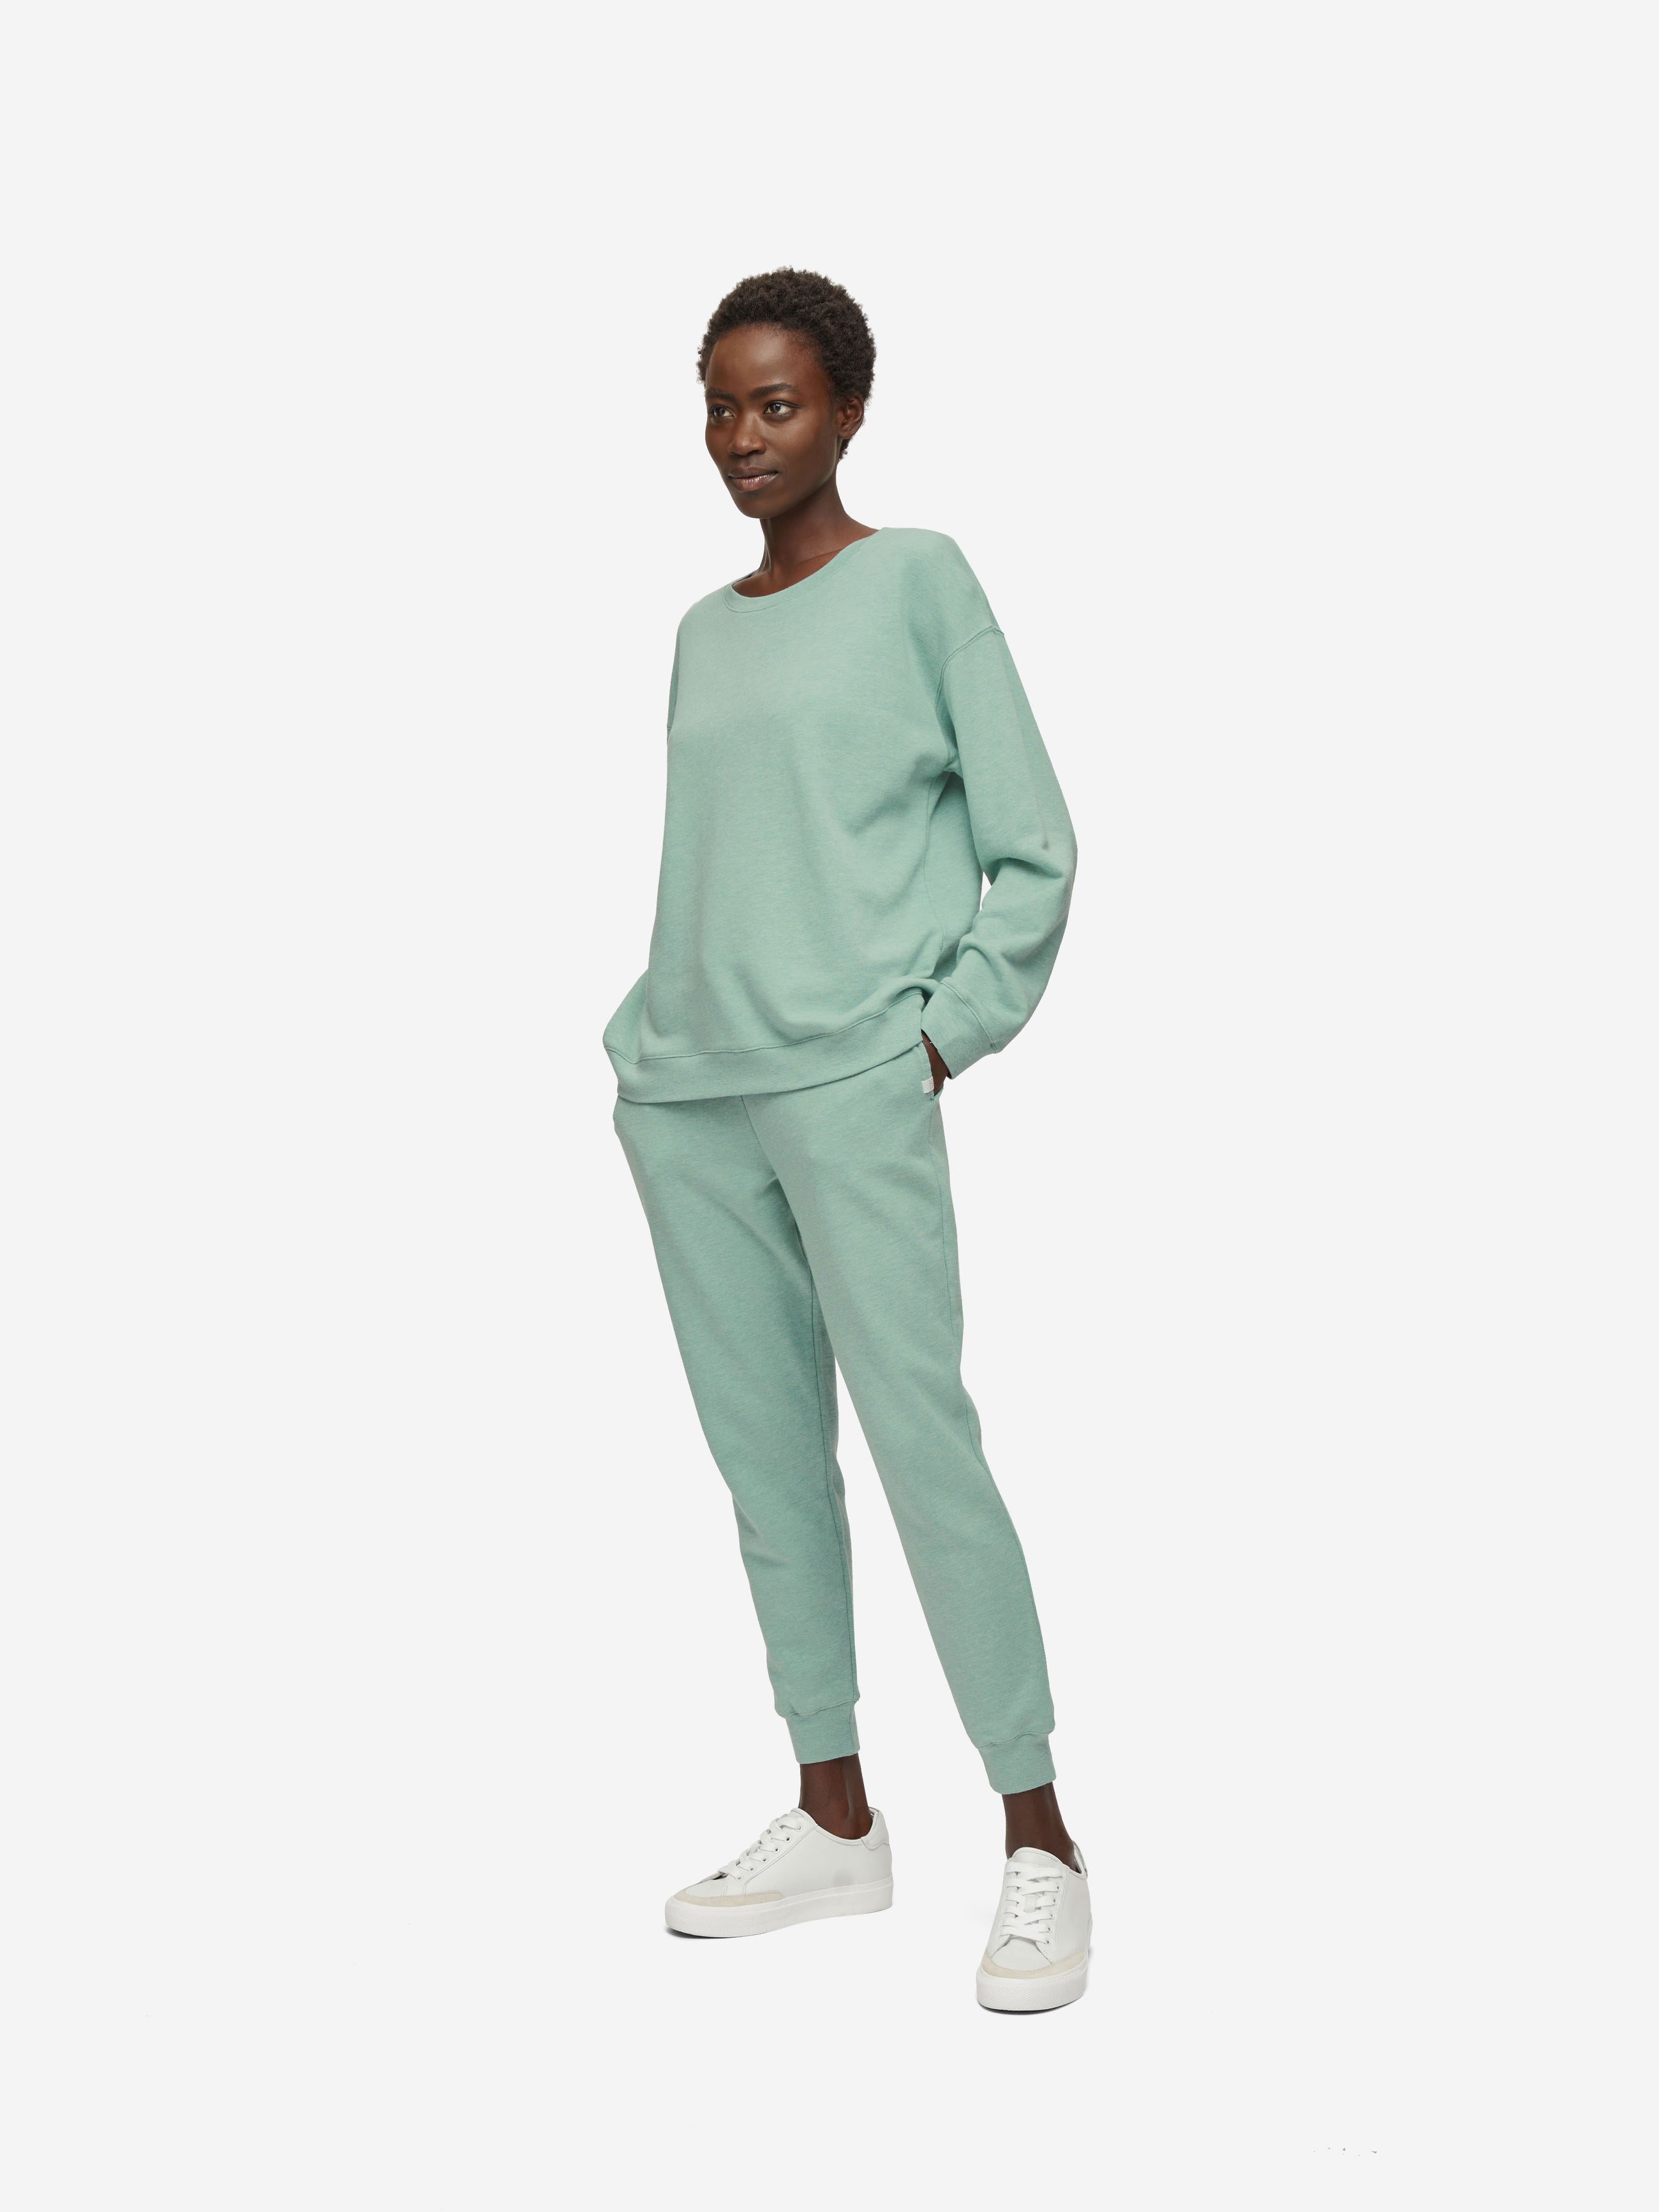 Women's Sweatshirt Quinn Cotton Modal Soft Green Heather